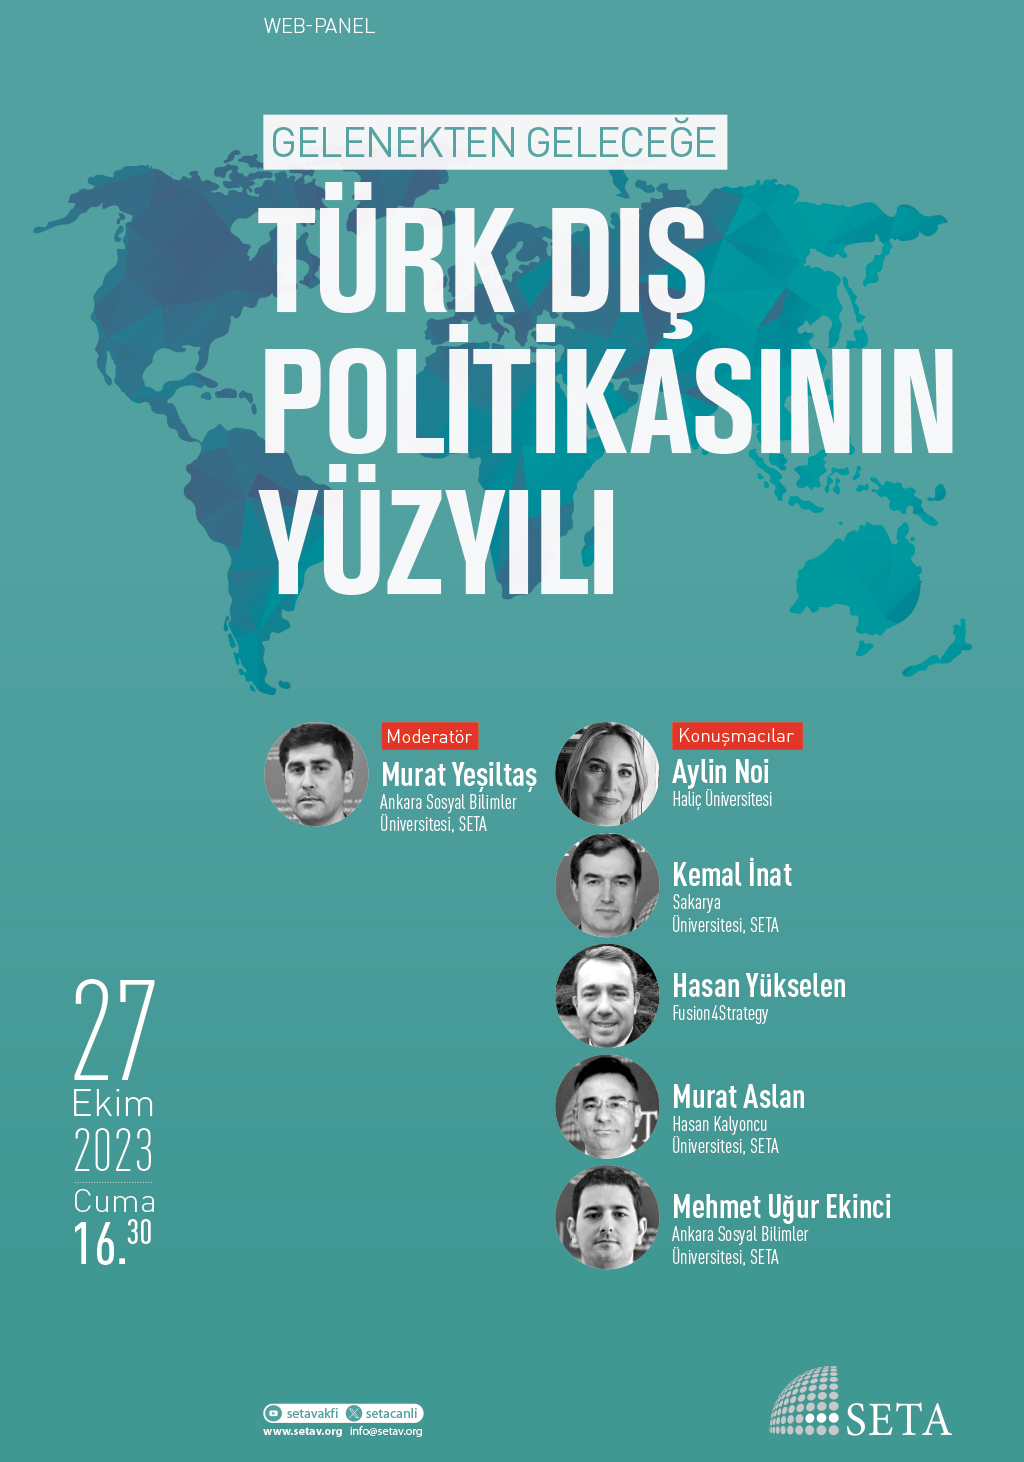 Web Panel: Gelenekten Geleceğe Türk Dış Politikasının Yüzyılı